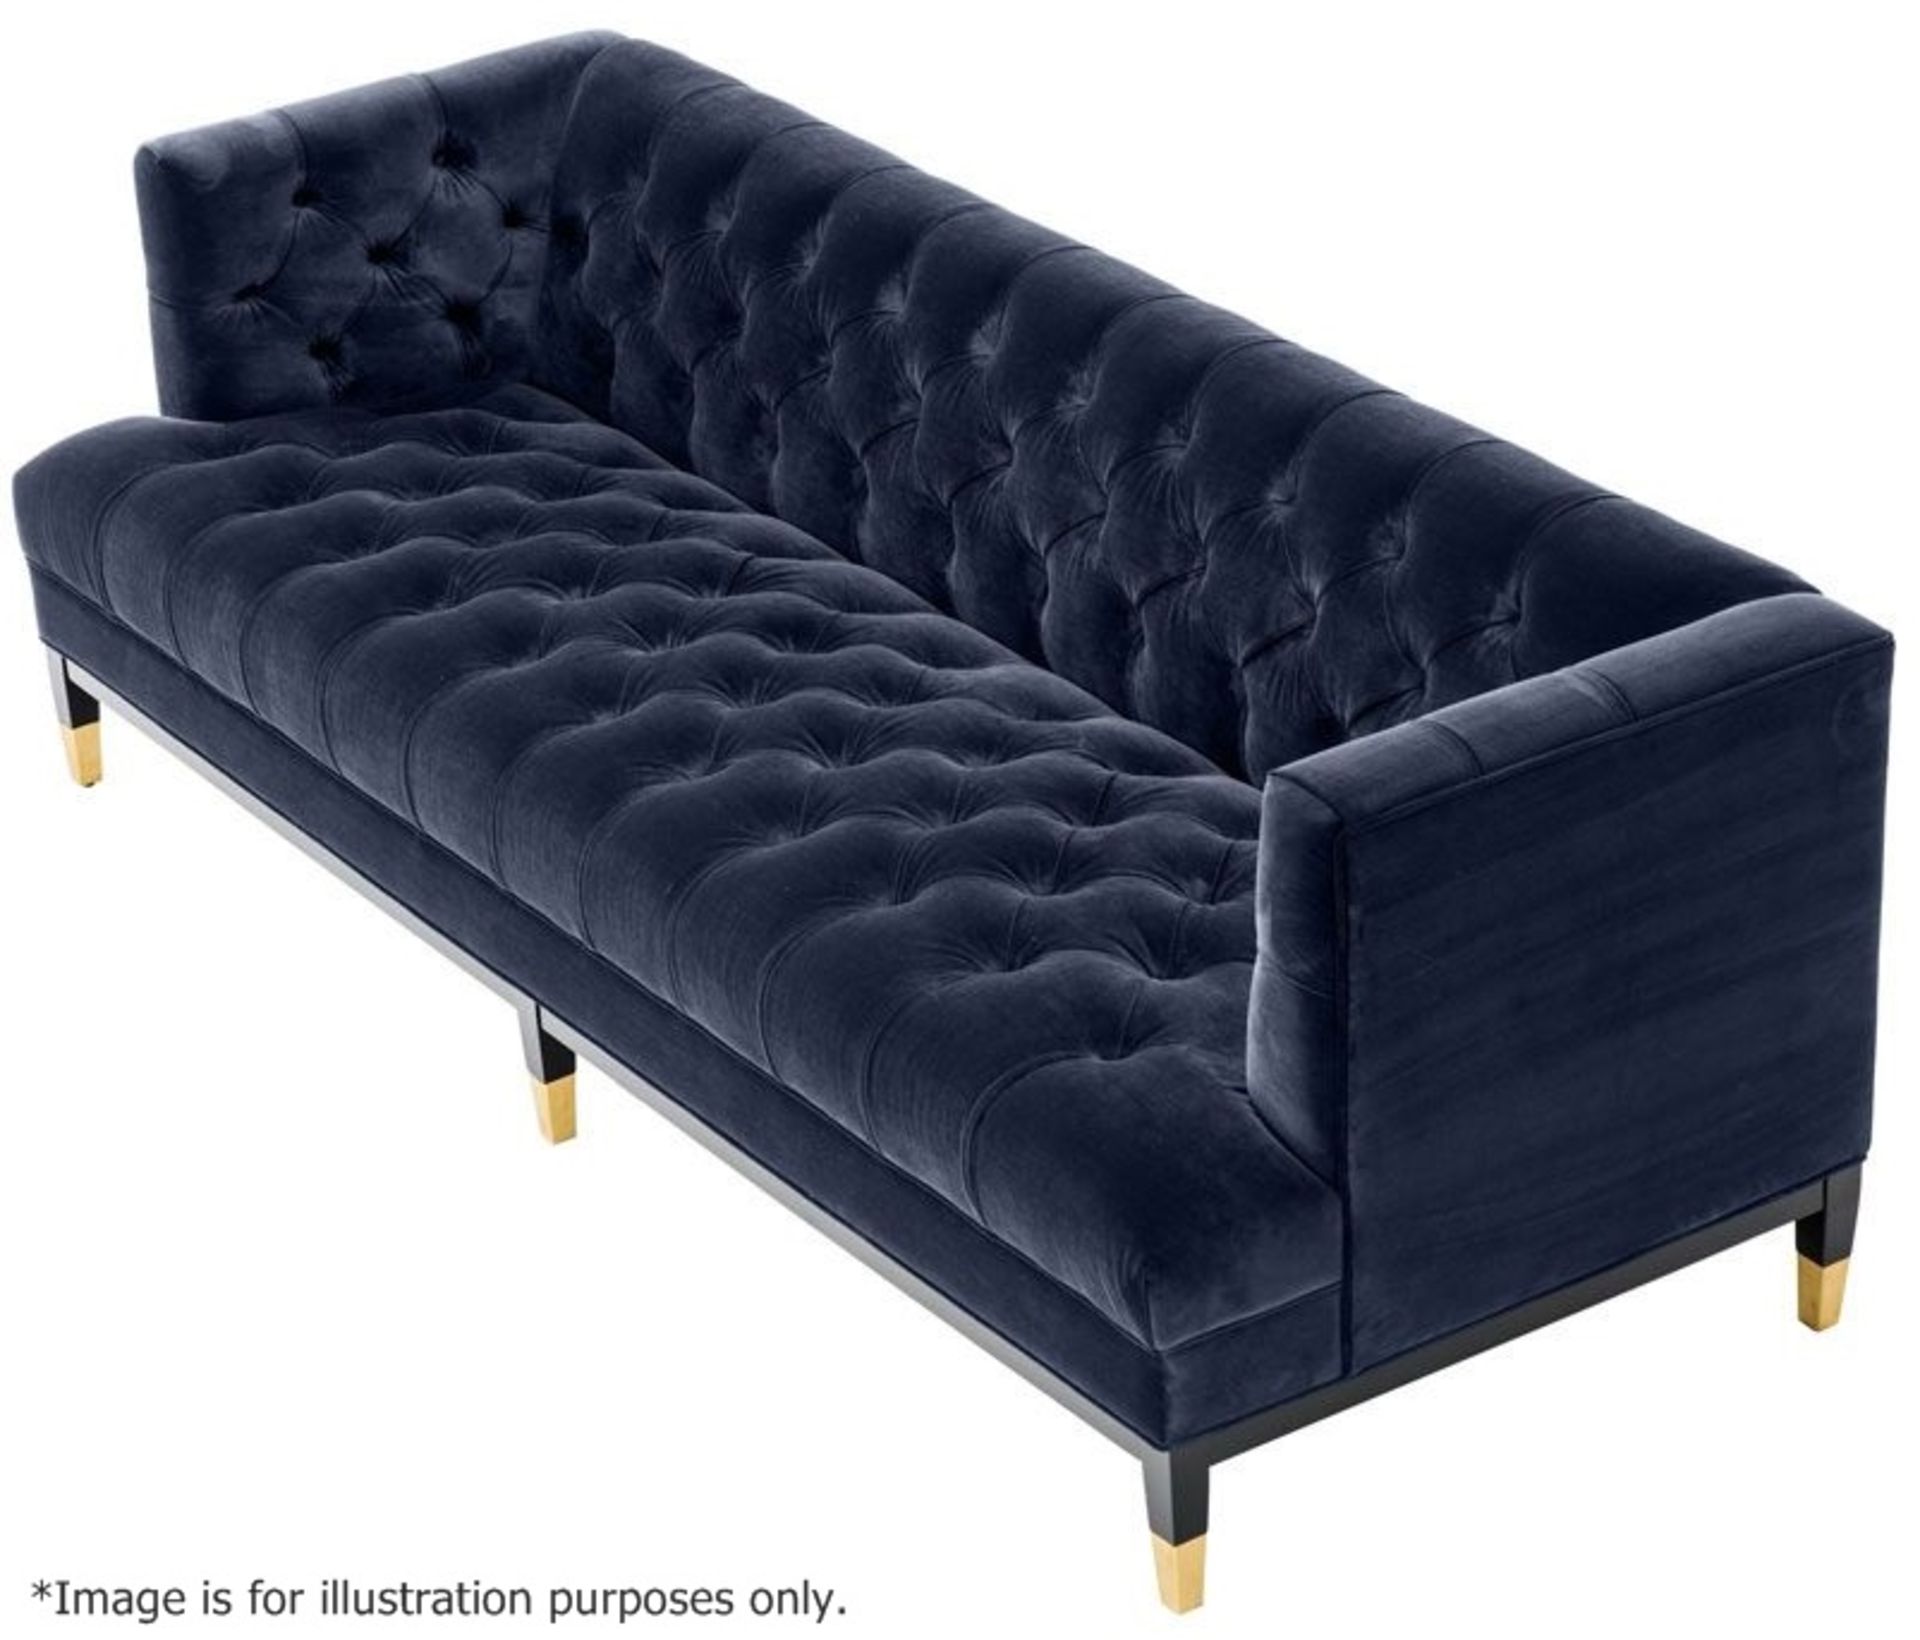 1 x EICHHOLTZ 'Castelle' 2.3 Metre Long Sofa Upholstered In Midnight Blue Velvet - RRP £3,320 - Image 4 of 10